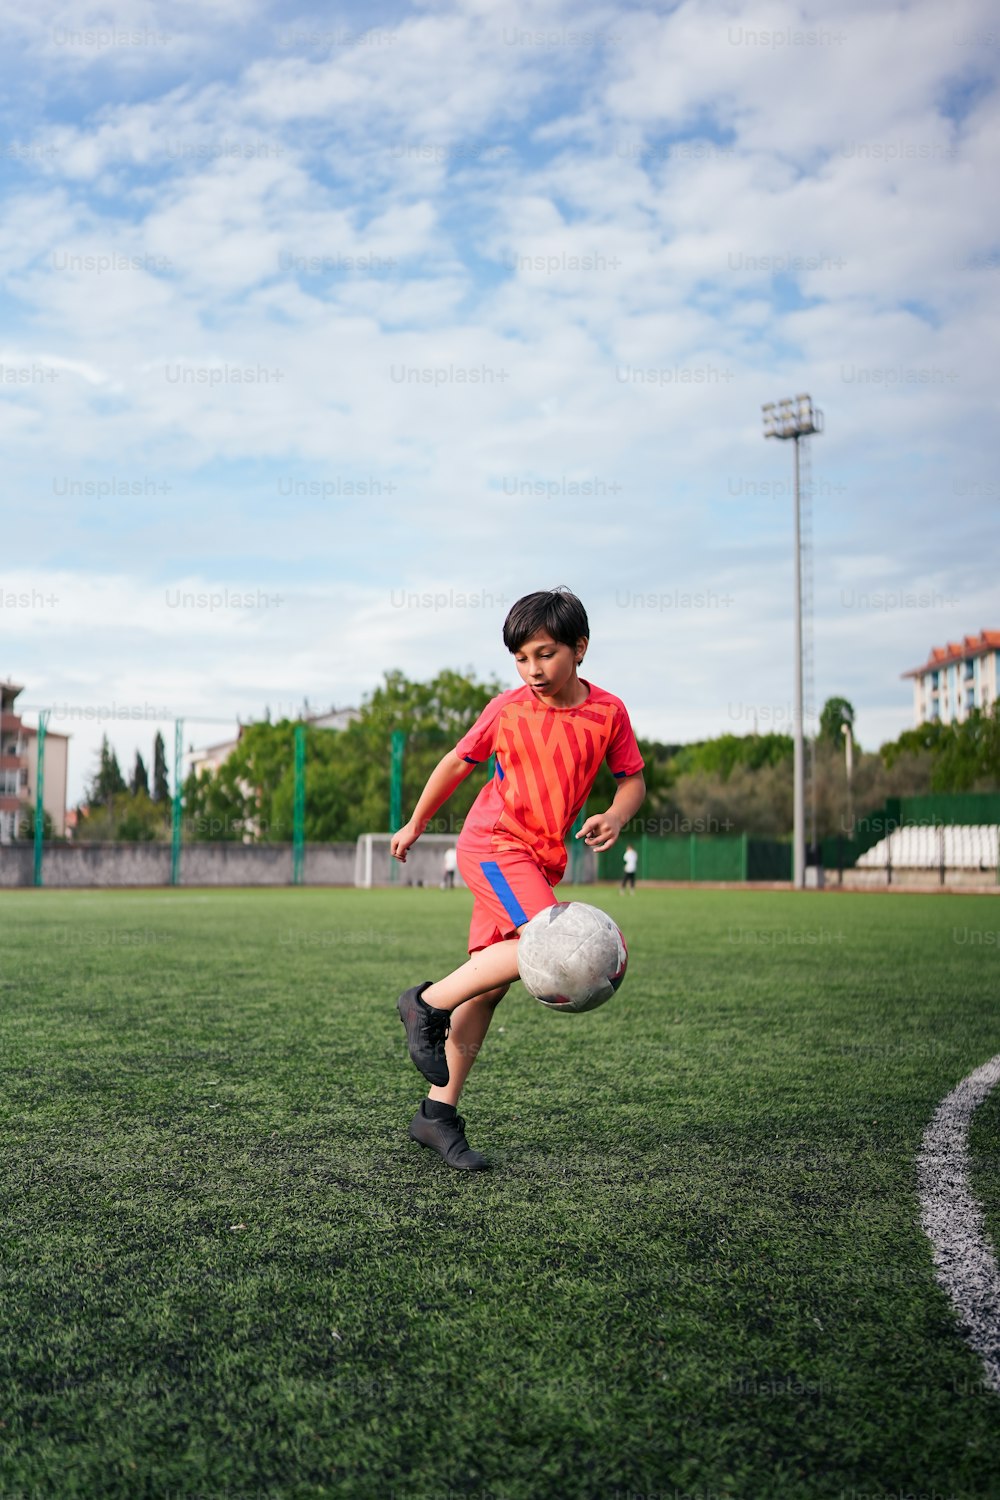 Un niño pateando una pelota de fútbol en un campo